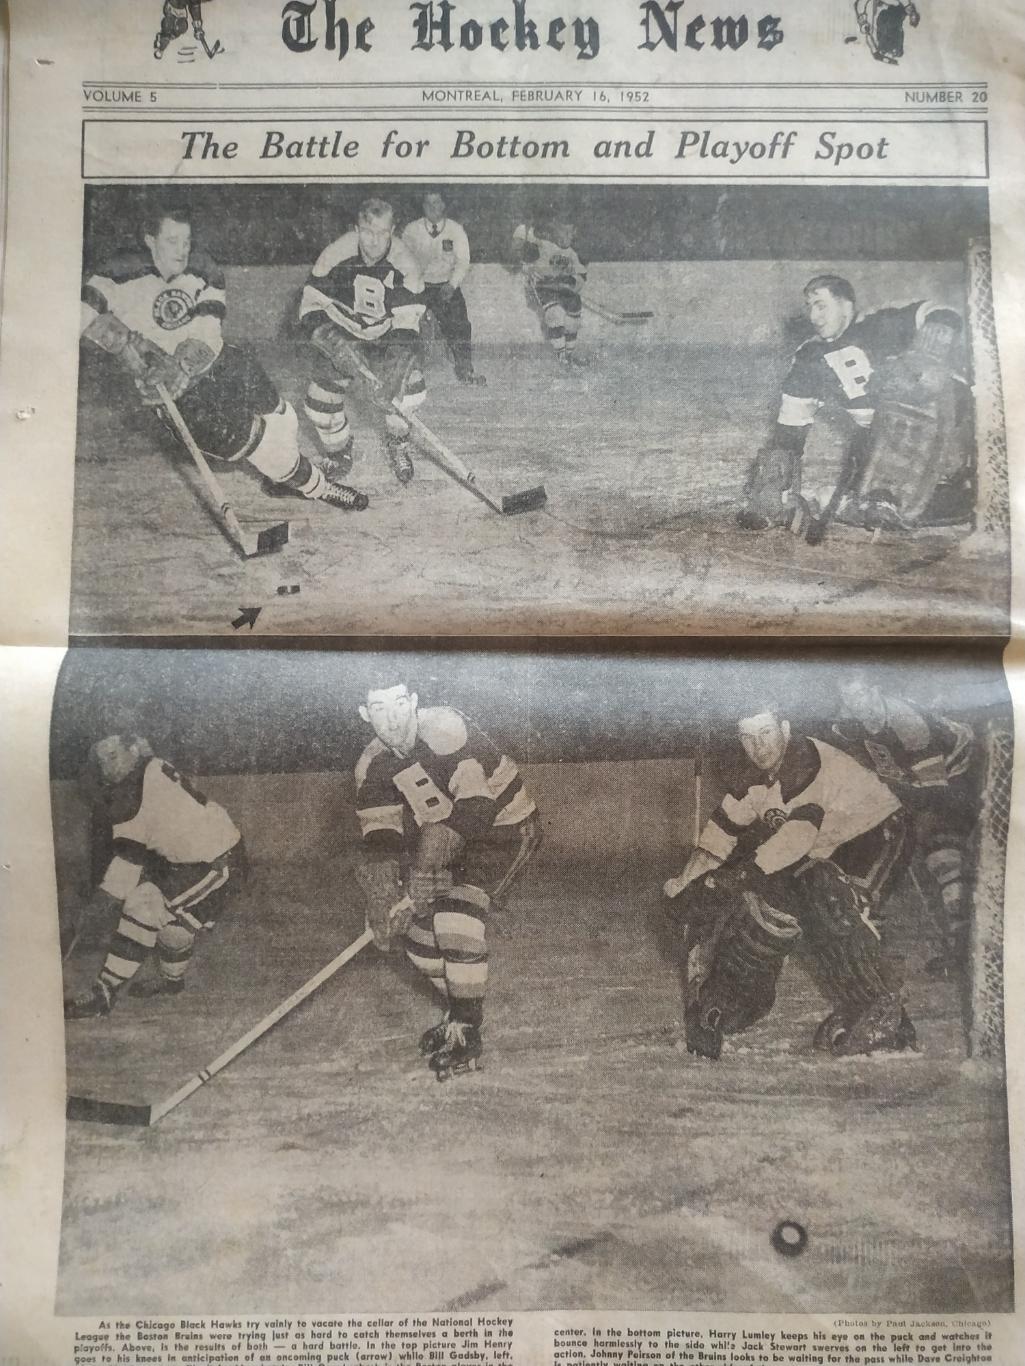 ХОККЕЙ ЖУРНАЛ ЕЖЕНЕДЕЛЬНИК НХЛ НОВОСТИ ХОККЕЯ FEB.16 1952 NHL THE HOCKEY NEWS 5